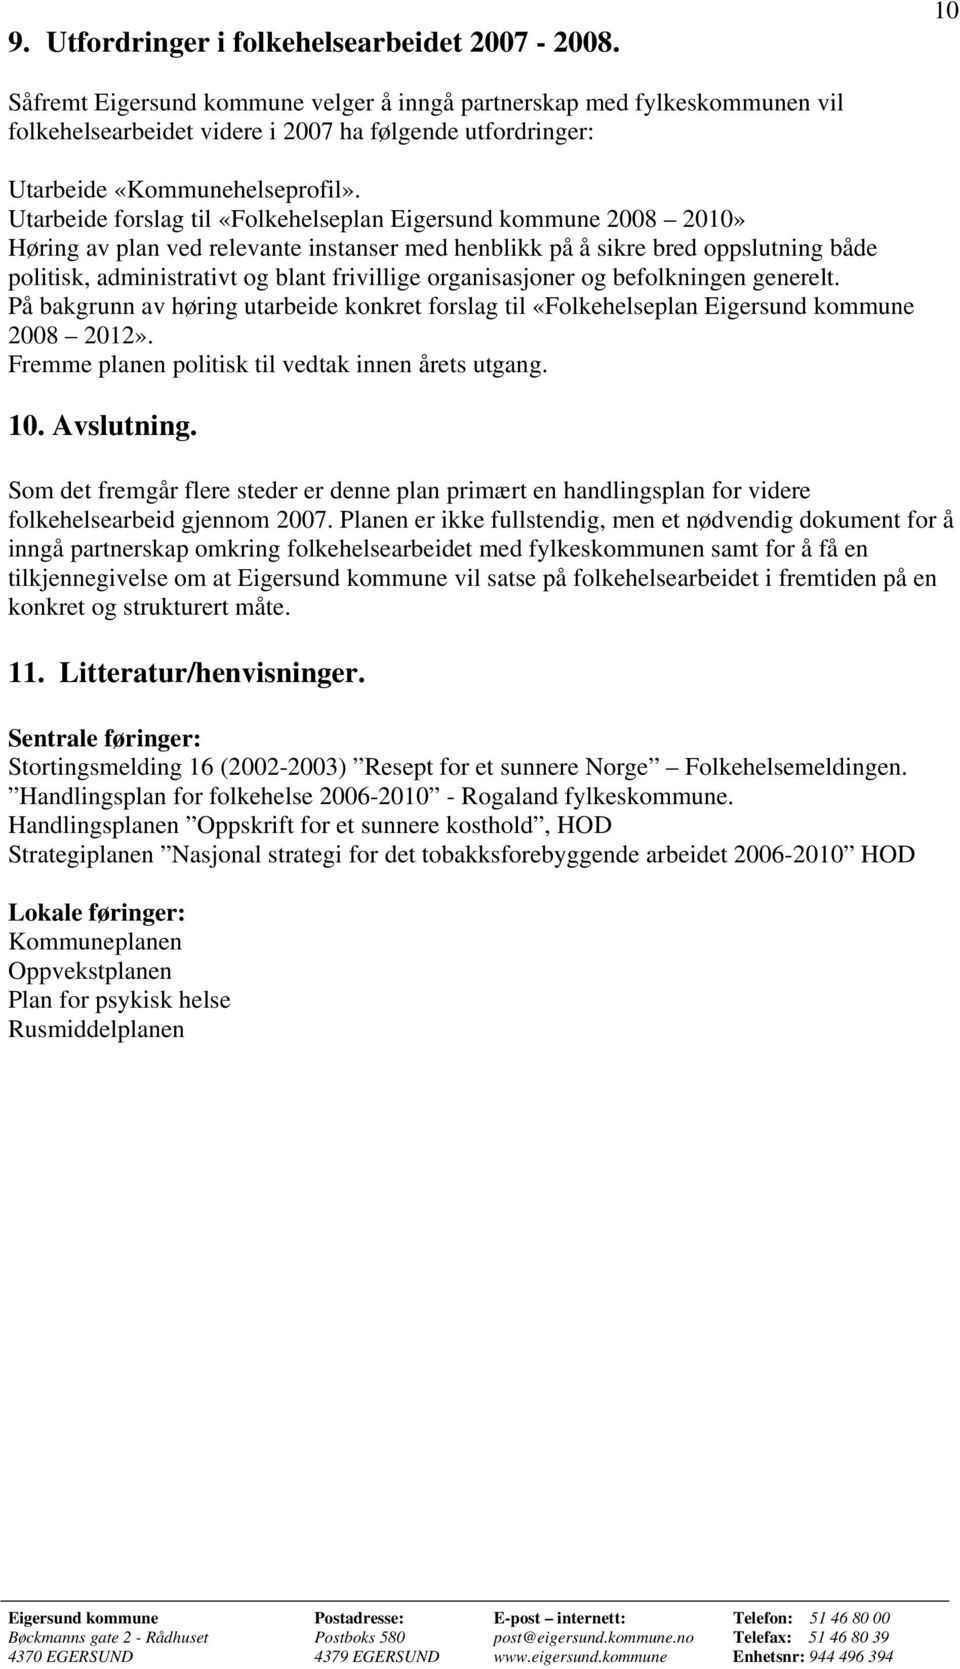 Utarbeide forslag til «Folkehelseplan Eigersund kommune 2008 2010» Høring av plan ved relevante instanser med henblikk på å sikre bred oppslutning både politisk, administrativt og blant frivillige